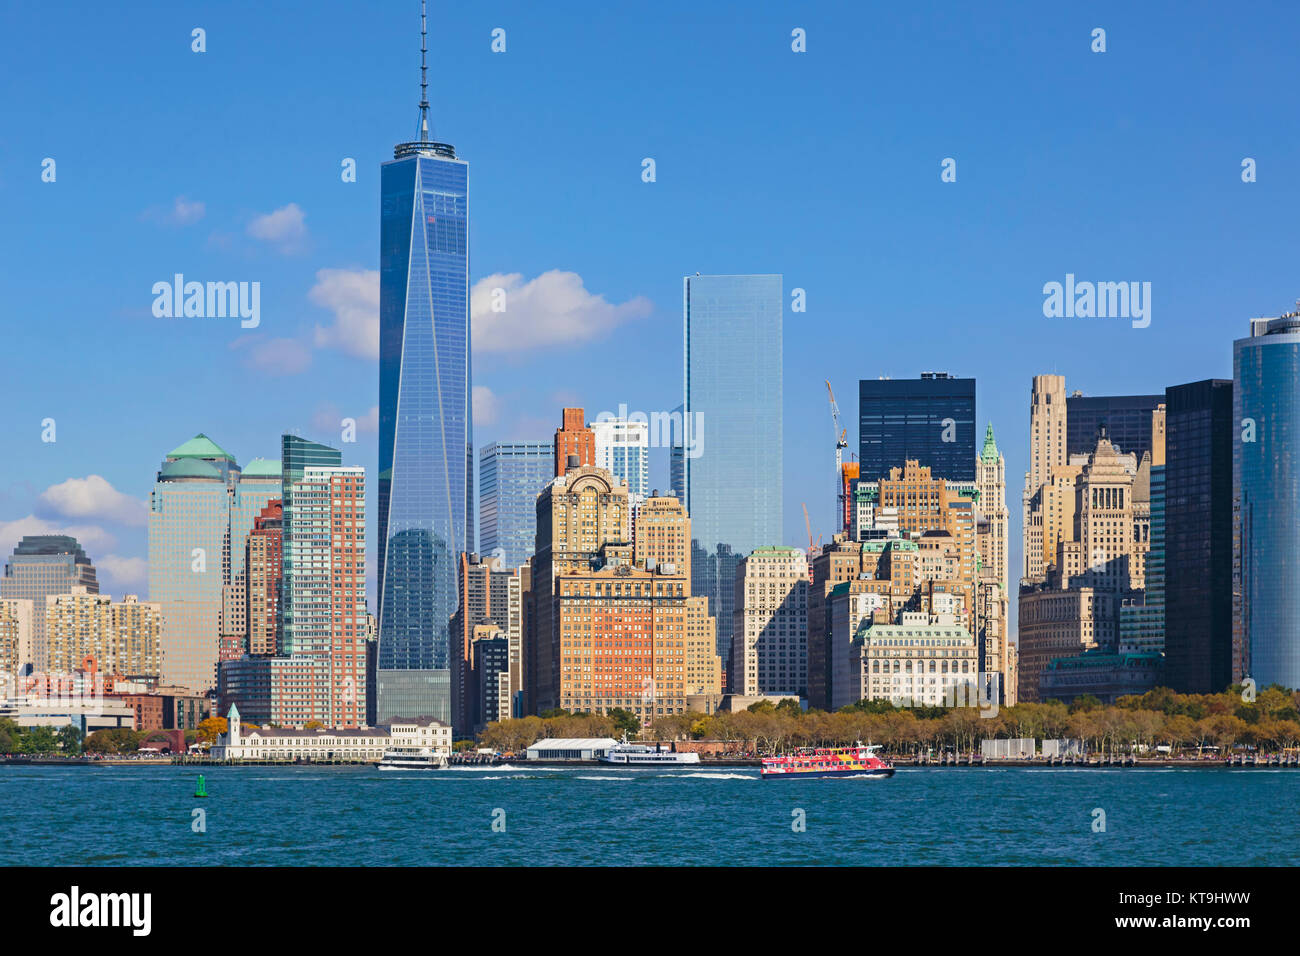 Nueva York, Estado de Nueva York, Estados Unidos de América. Manhattan visto desde la bahía de Nueva York. El edificio alto es uno del World Trade Center, también conocido como 1 W Foto de stock